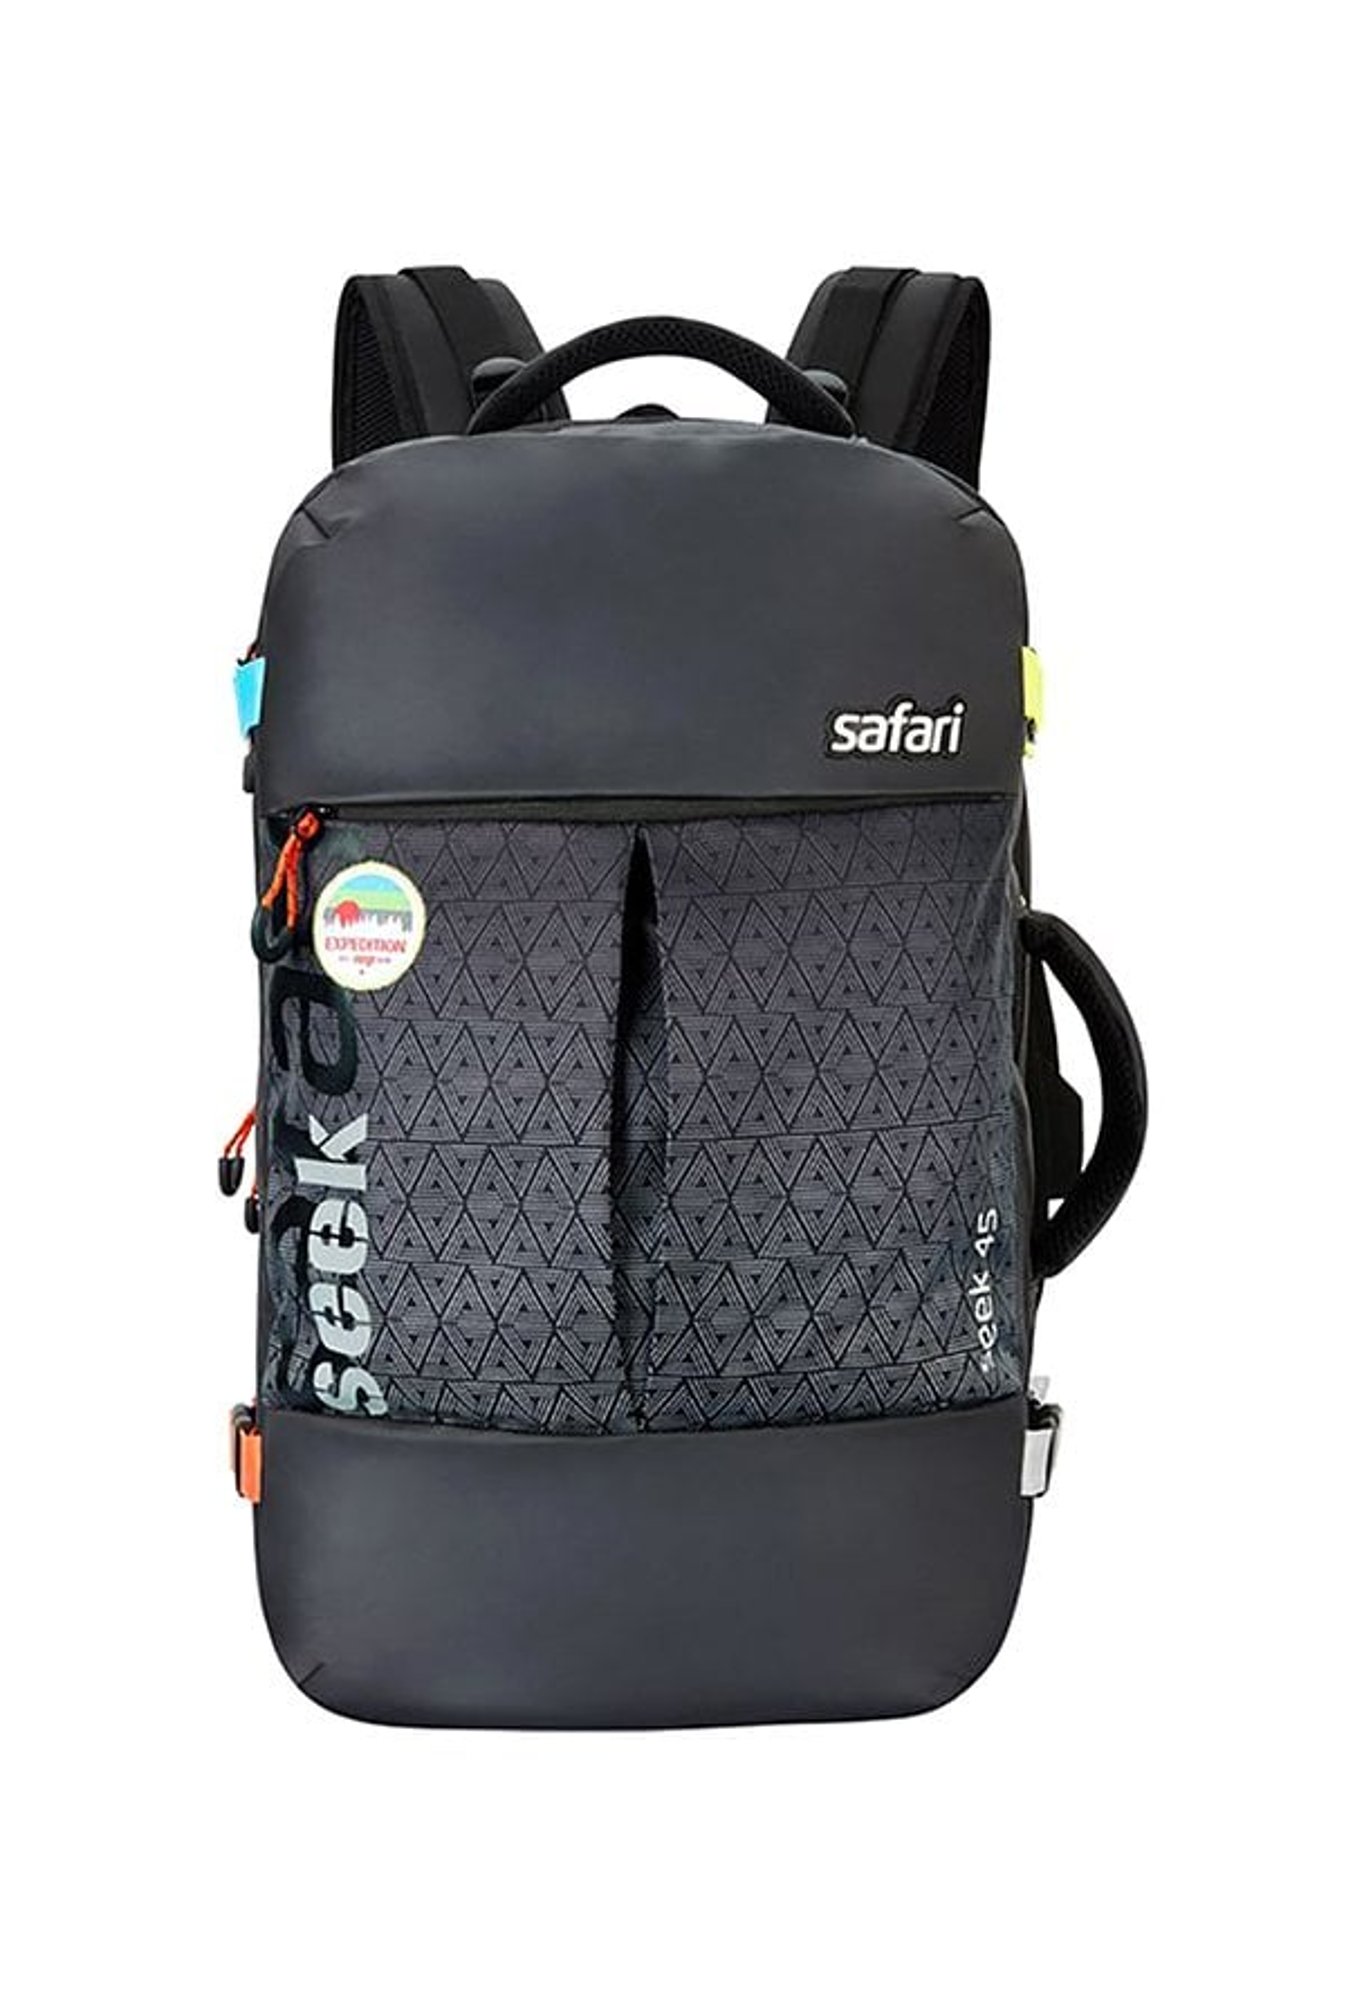 safari backpack price